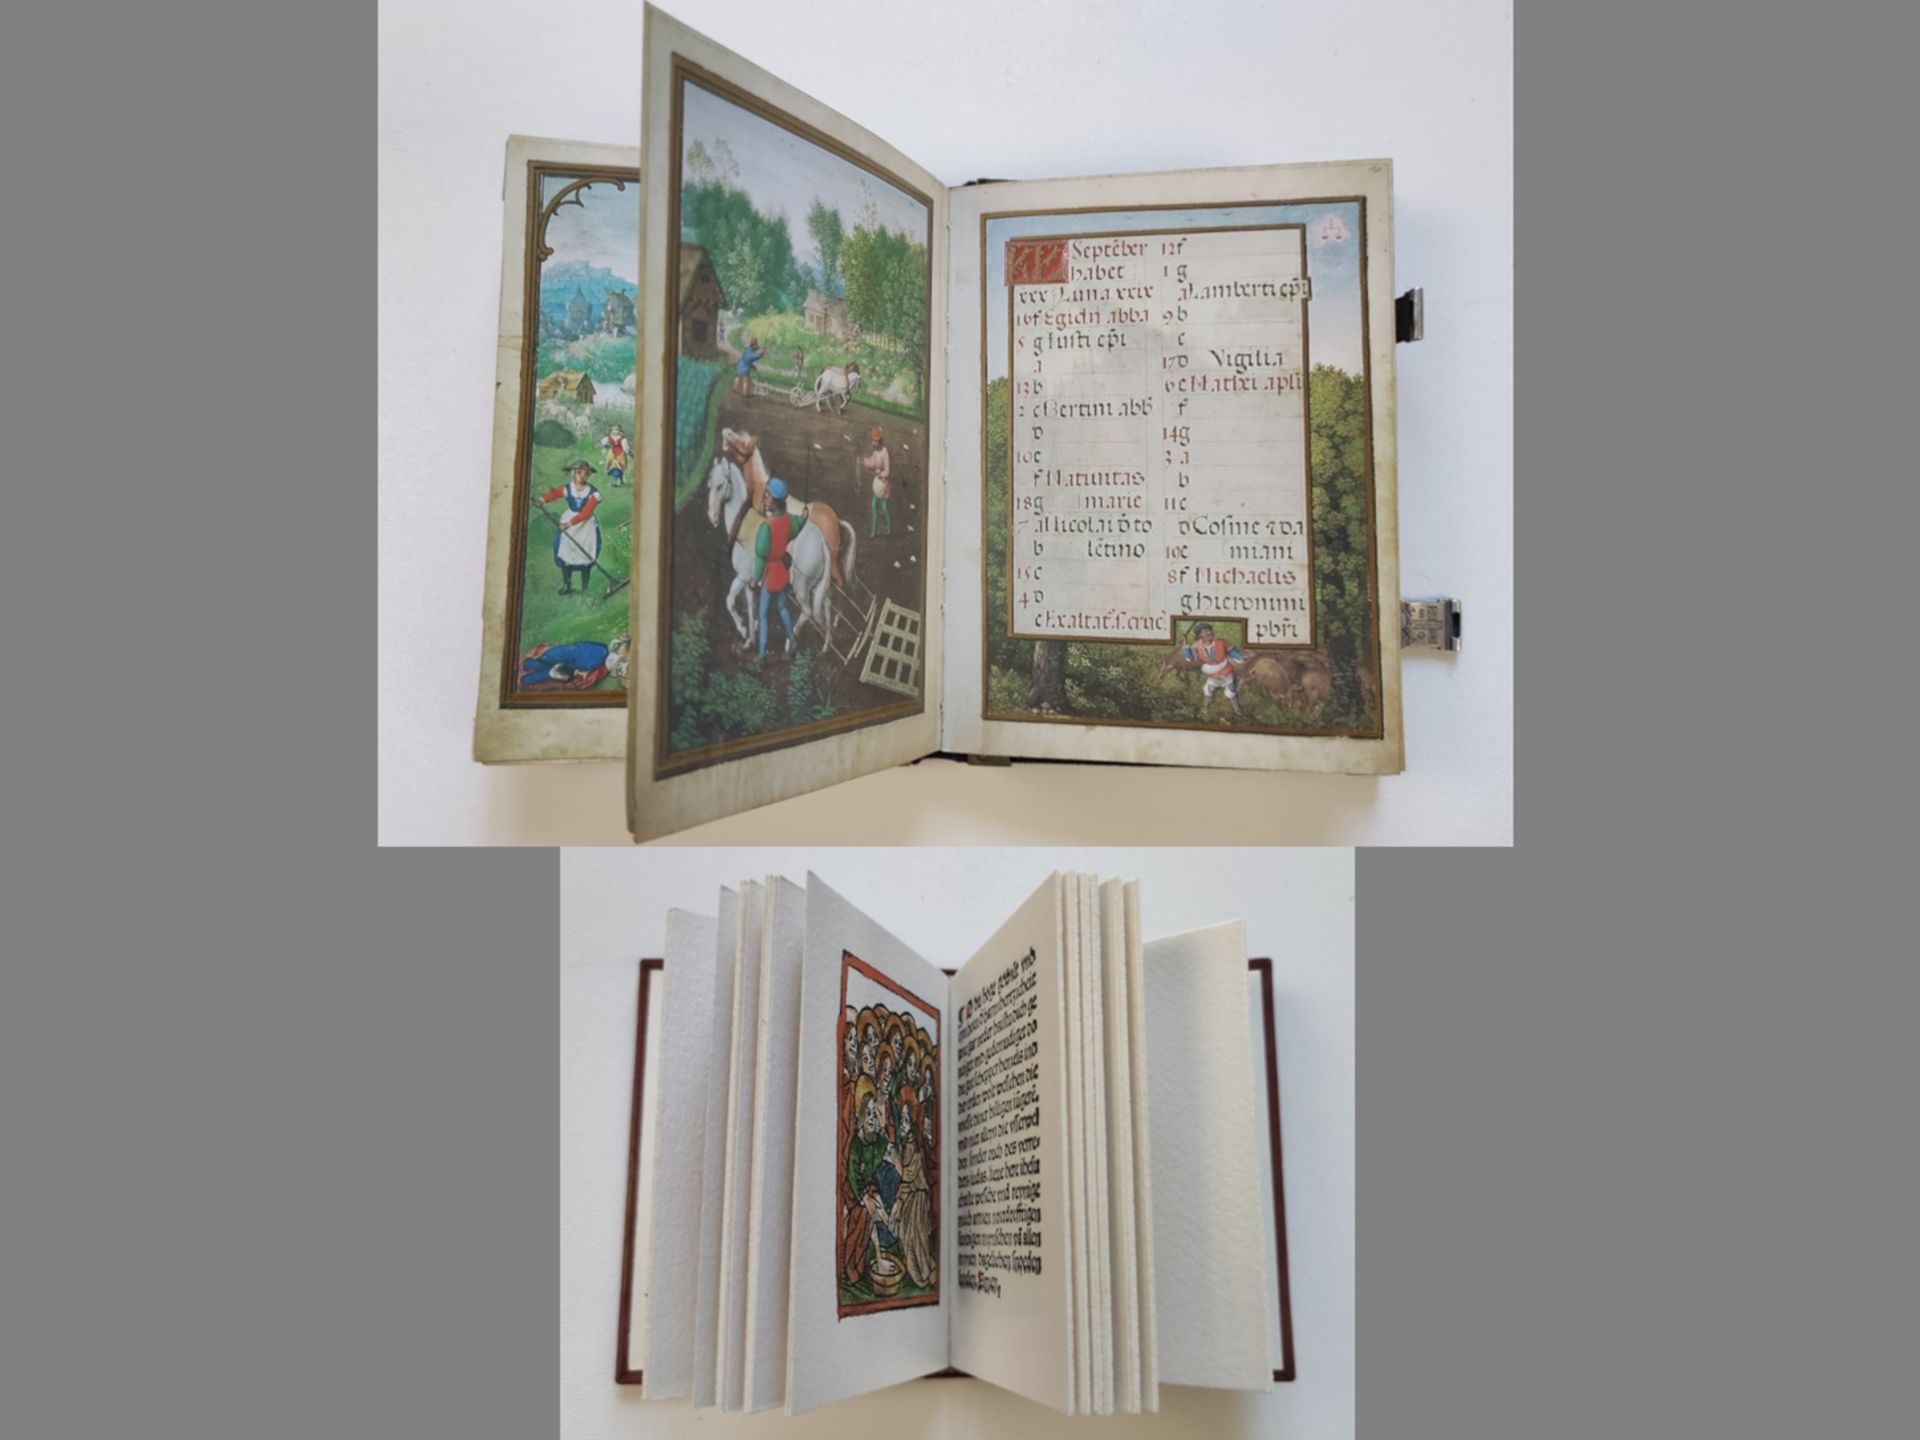 Von Landen, Johann: "Das Kölner Gebetsbuch" 2 volumes in slipcase, Cologne 1506-1507, Urs Graf Verl